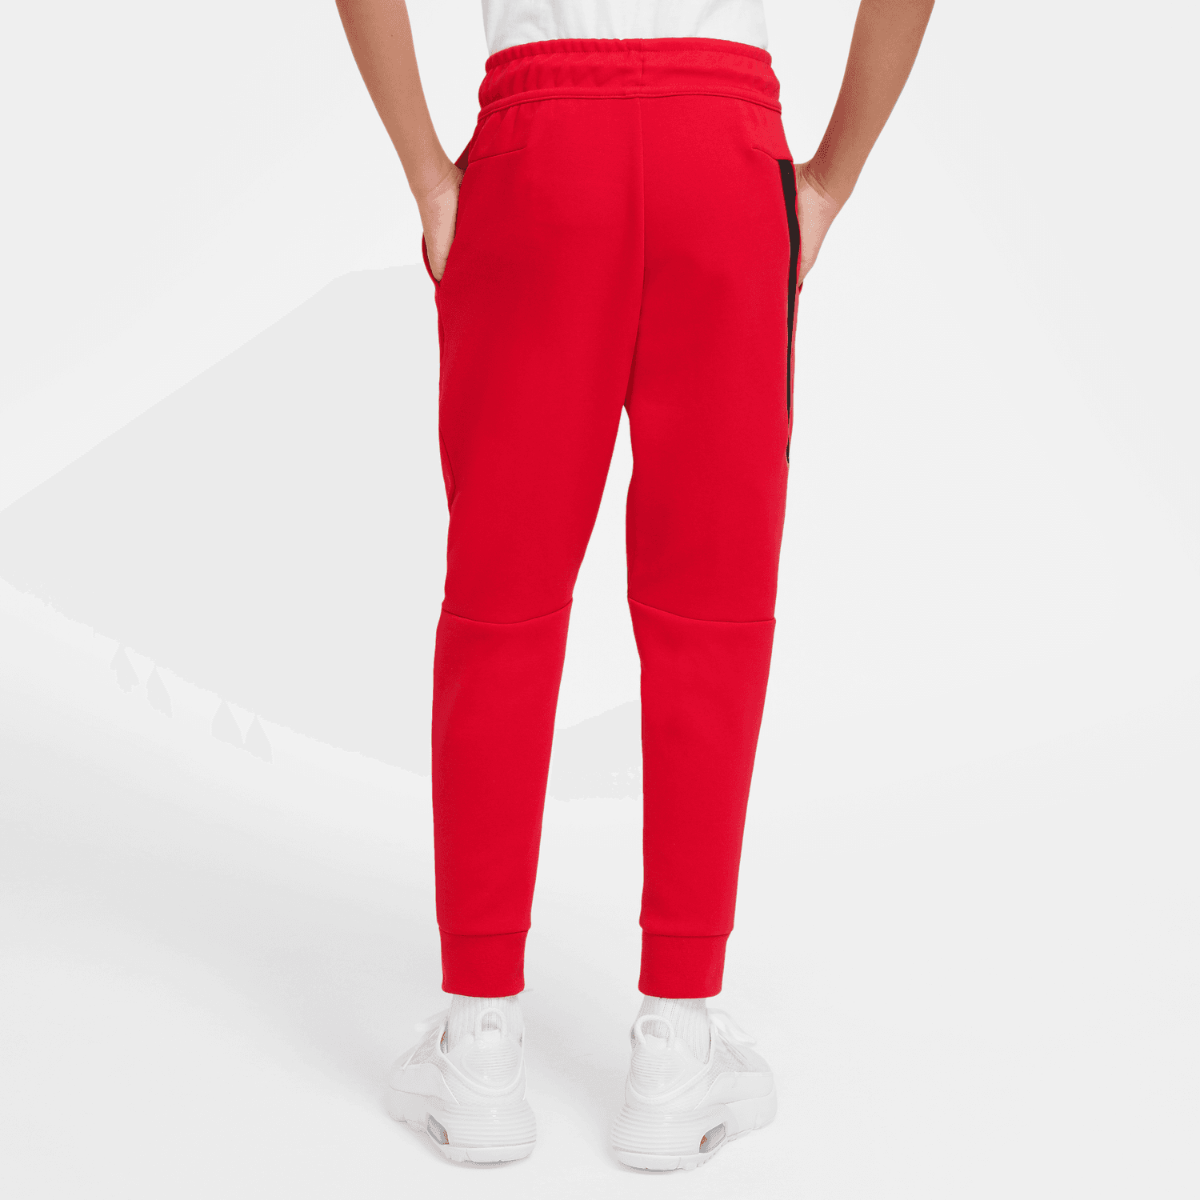 Pantalón de jogging Nike Tech Fleece Junior - Rouge/Noir